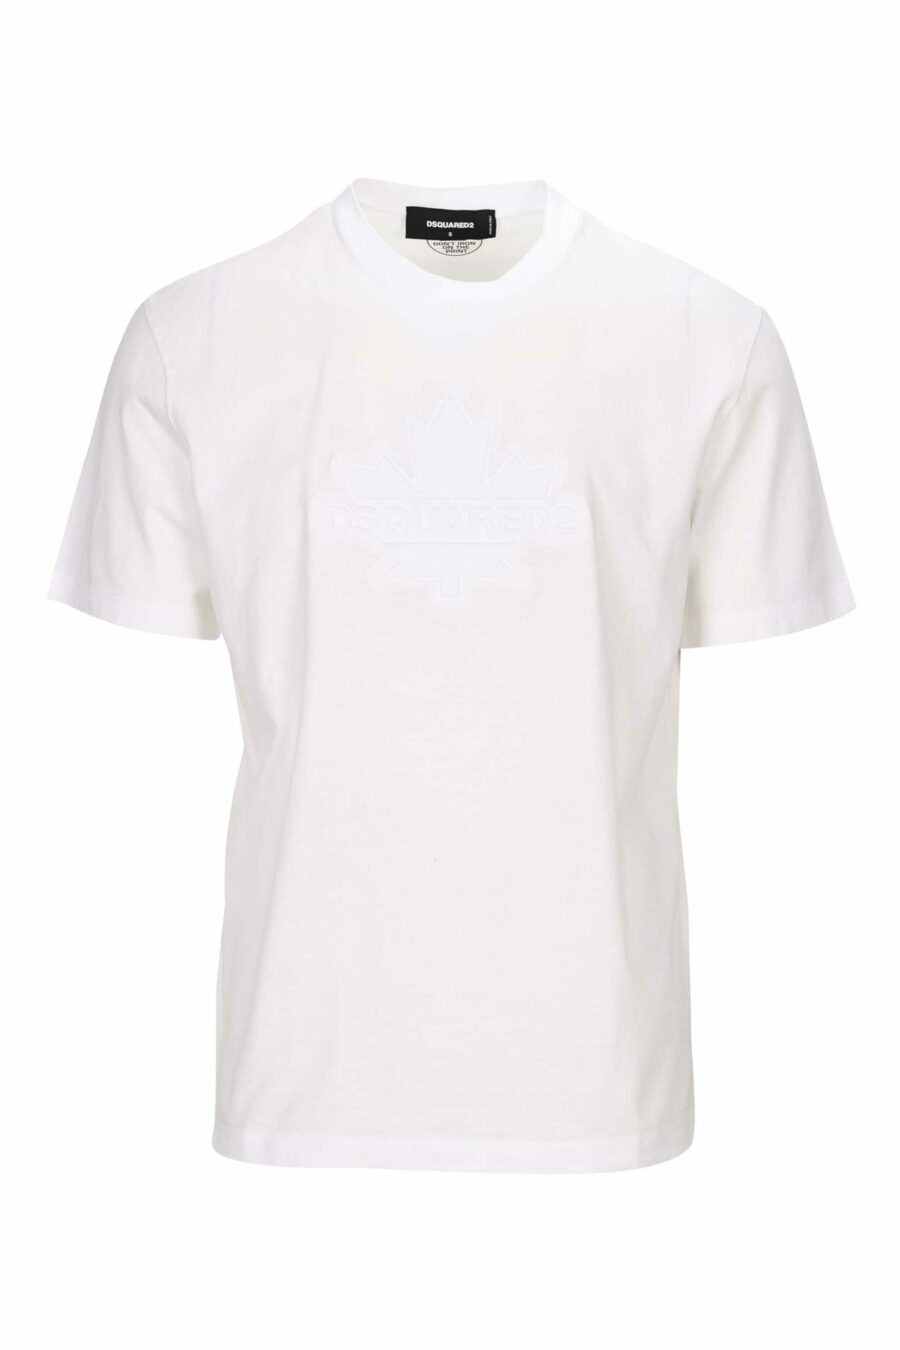 T-shirt blanc avec feuille monochrome embossée maxilogo - 8054148265830 scaled